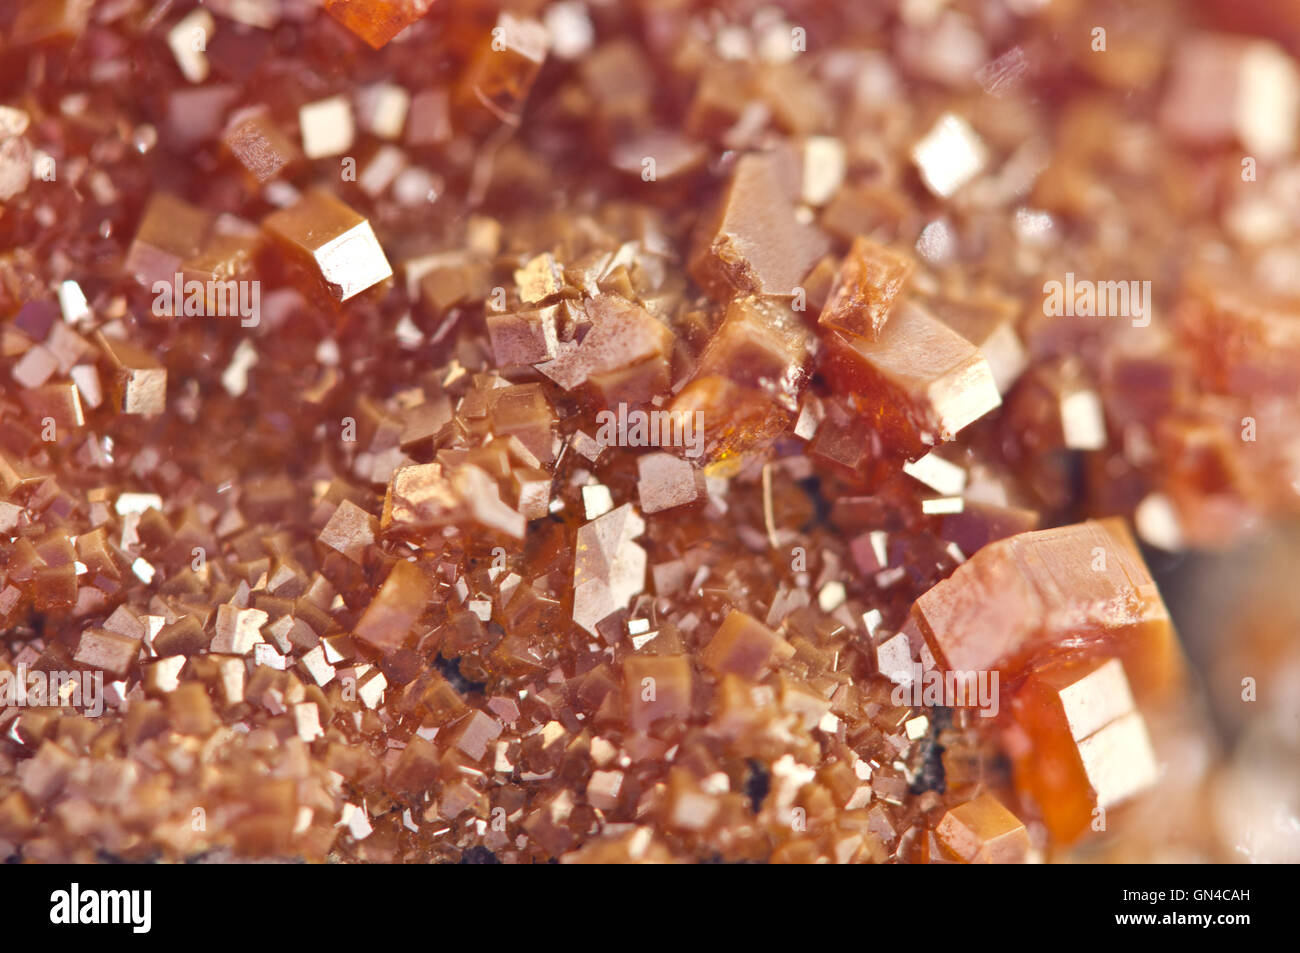 Vanadinit Kristallen ist ein Mineral Apatit Gruppe von Phosphaten, chemische Formel Pb5 (VO4) 3Cl.  Makro. Stockfoto